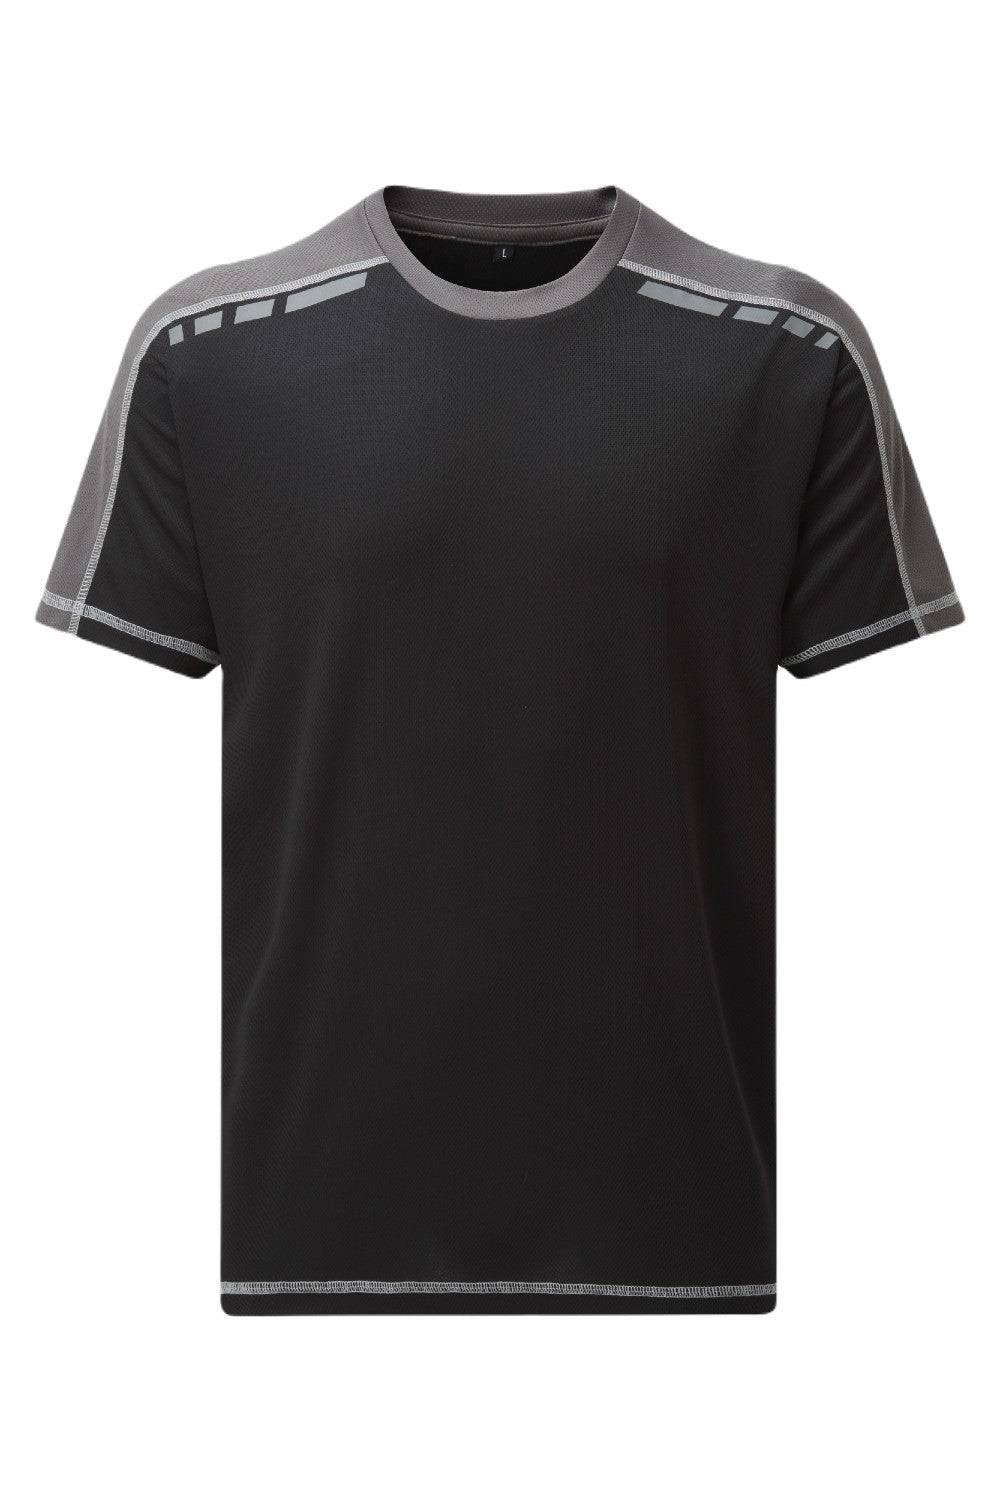 Tuffstuff 151 Elite T-Shirt Black L